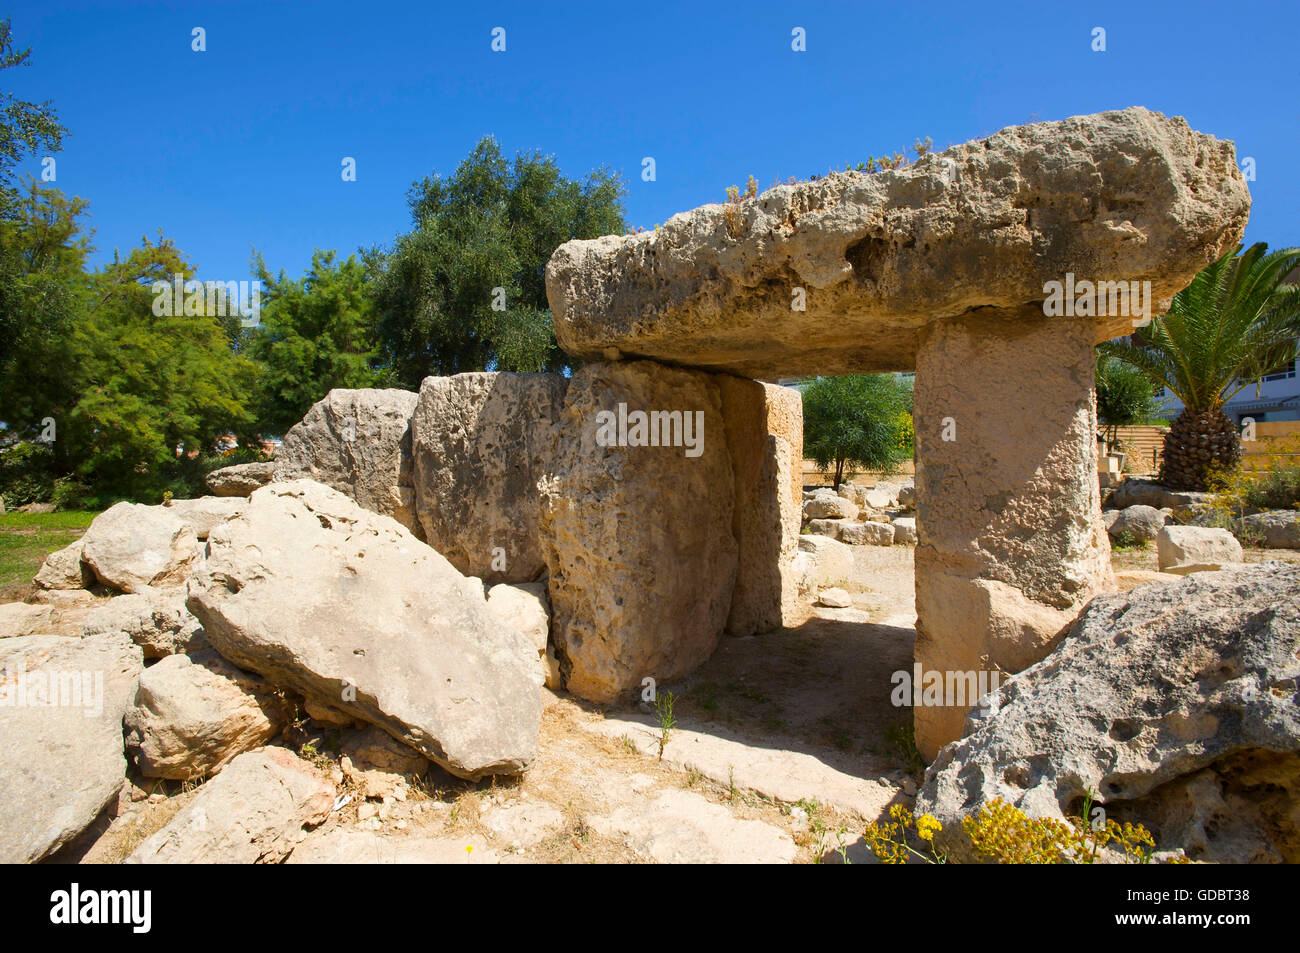 Tombe mégalithique à St pauls bay, Malte Banque D'Images